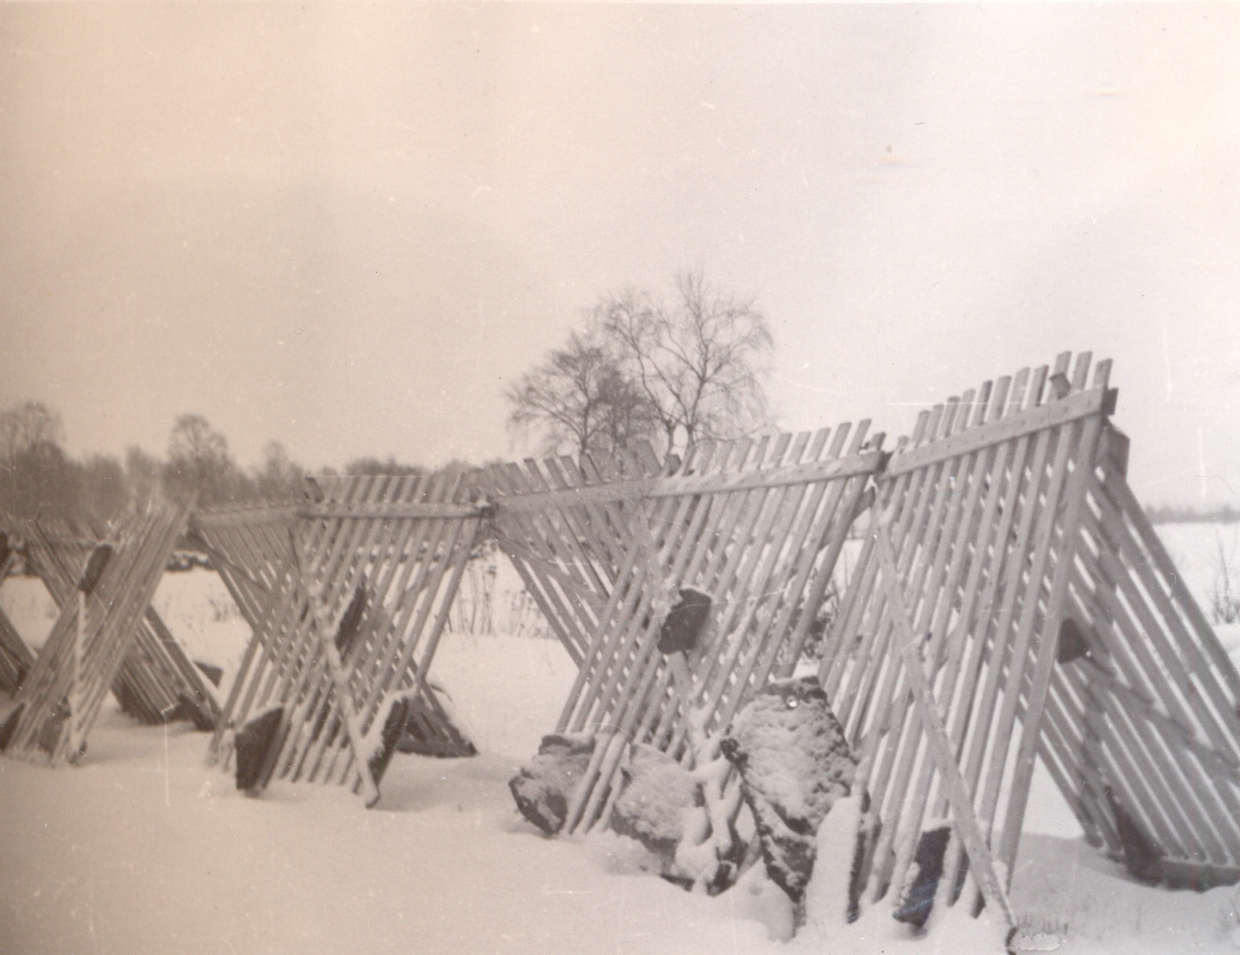 Paekividega kindlustatud traditsioonilised lumeväravad 1953. aastal. (Foto: Eesti Maanteemuuseum)